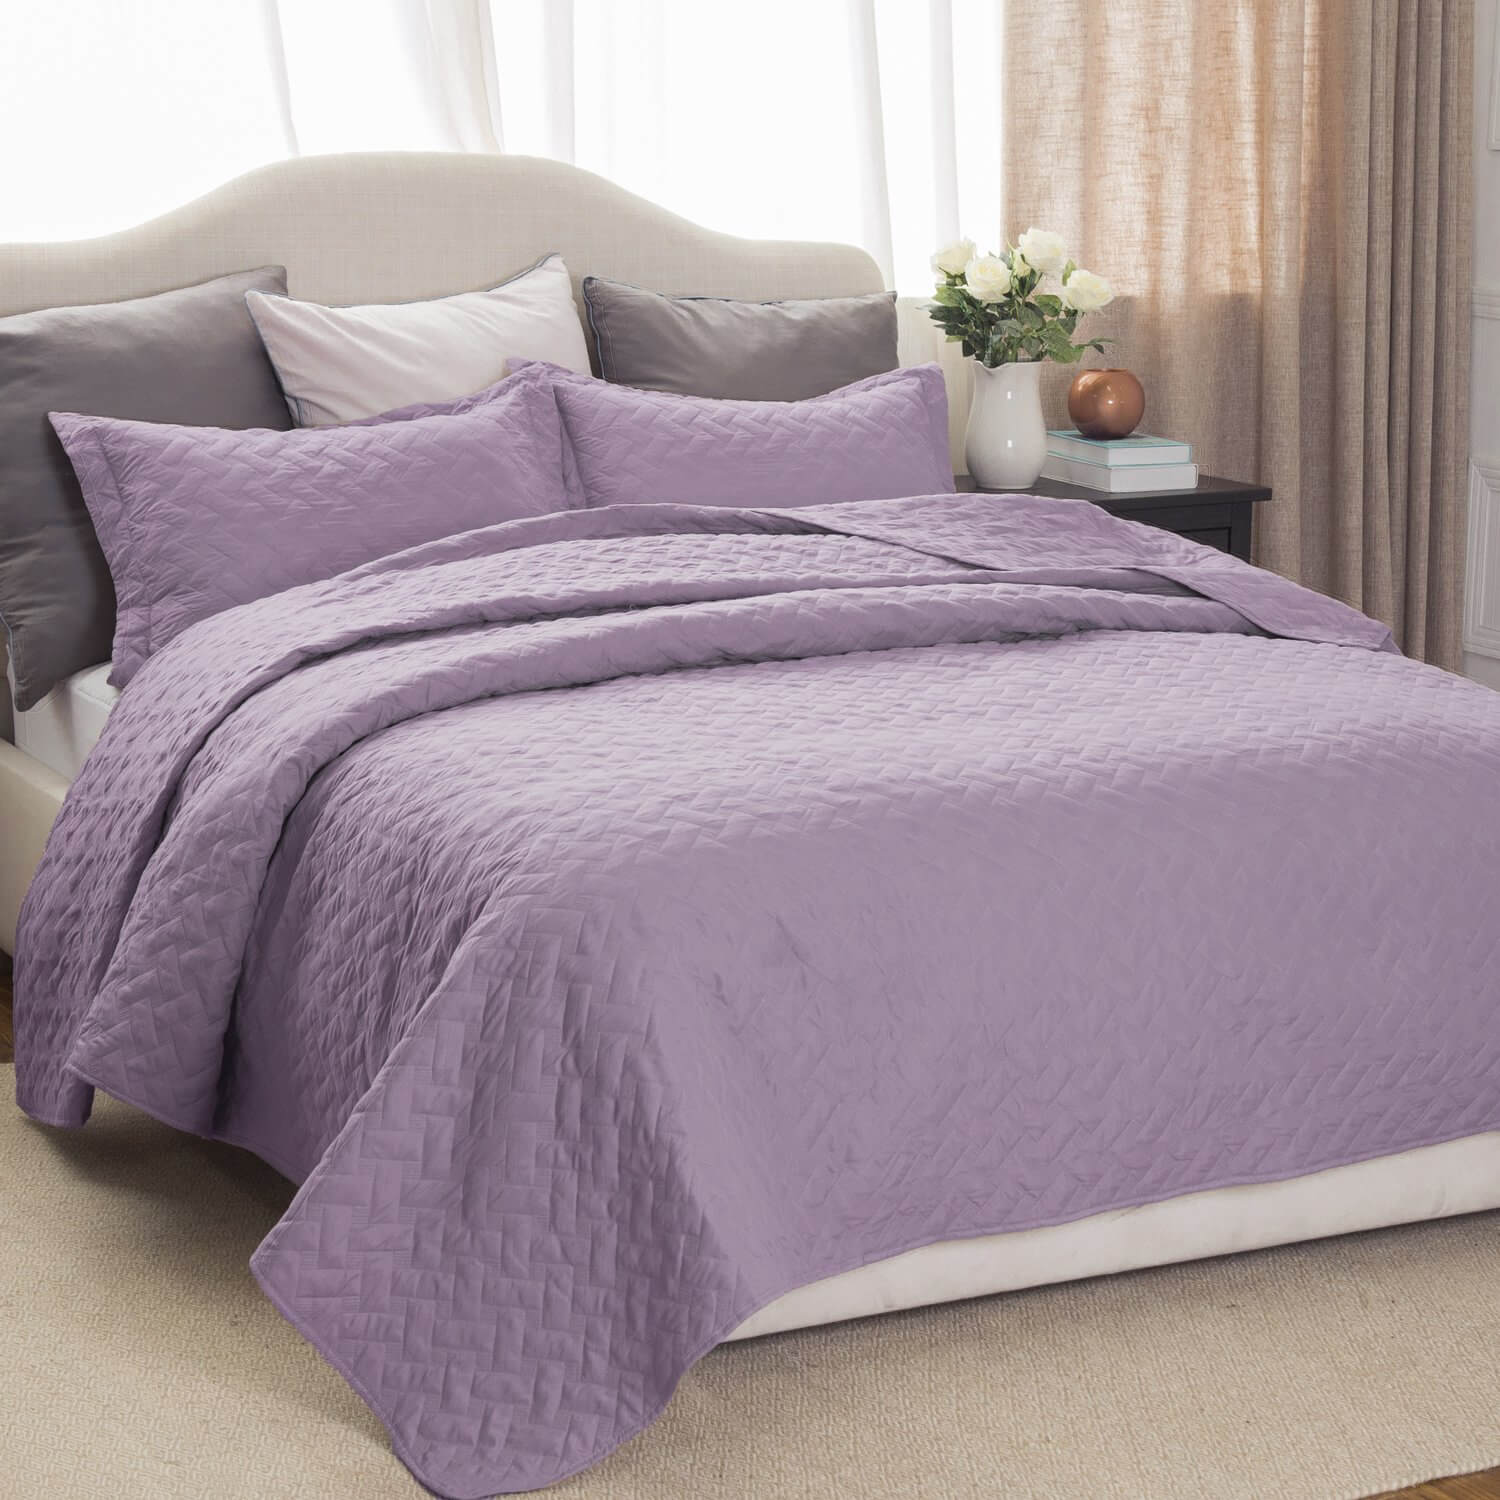 6. Bedsure Lavender Quilt Set-Twin Size